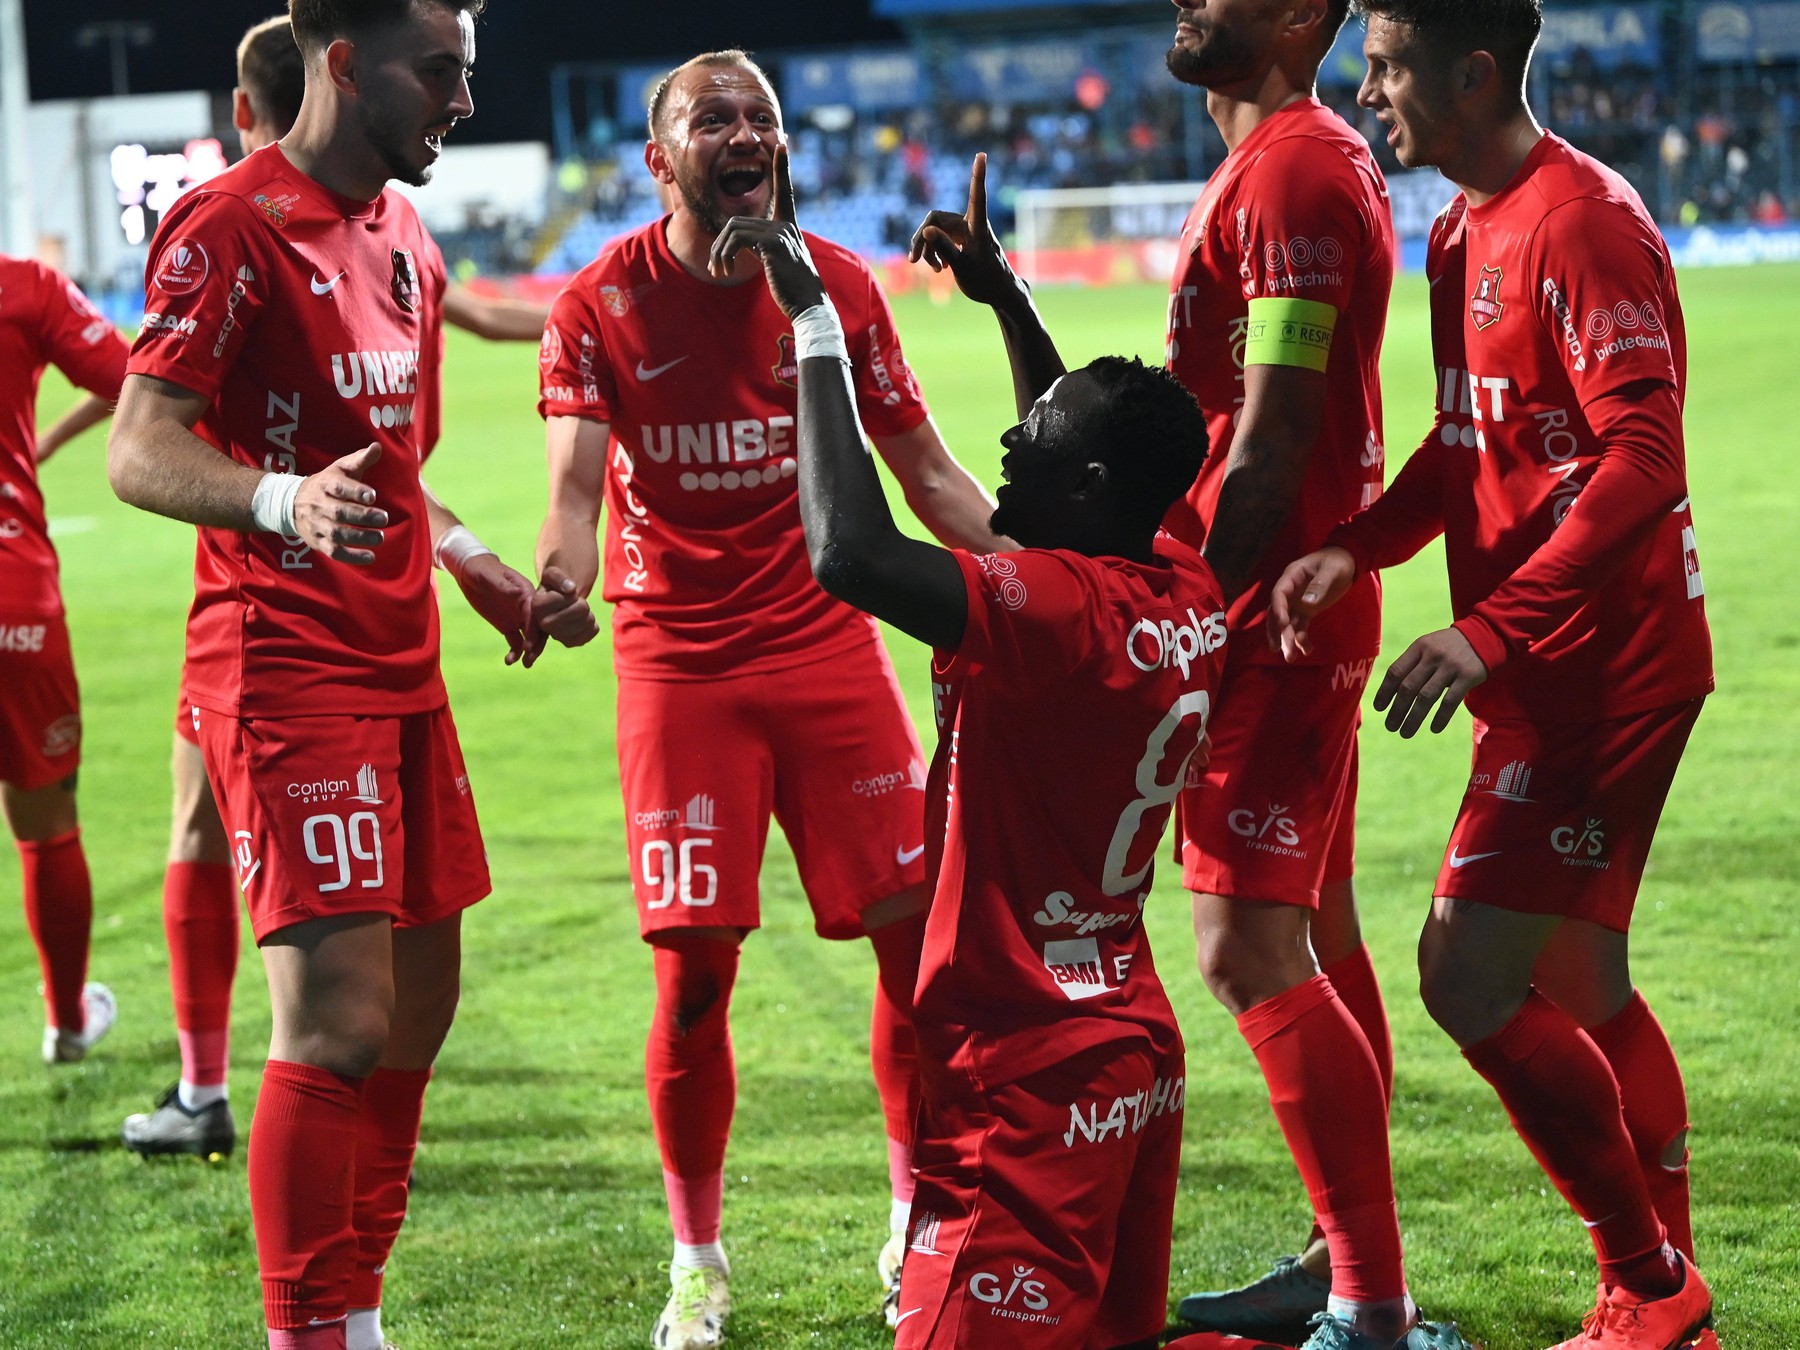 Transferat de FCSB, Baba Alhassan le dă primele emoții roș-albaștrilor